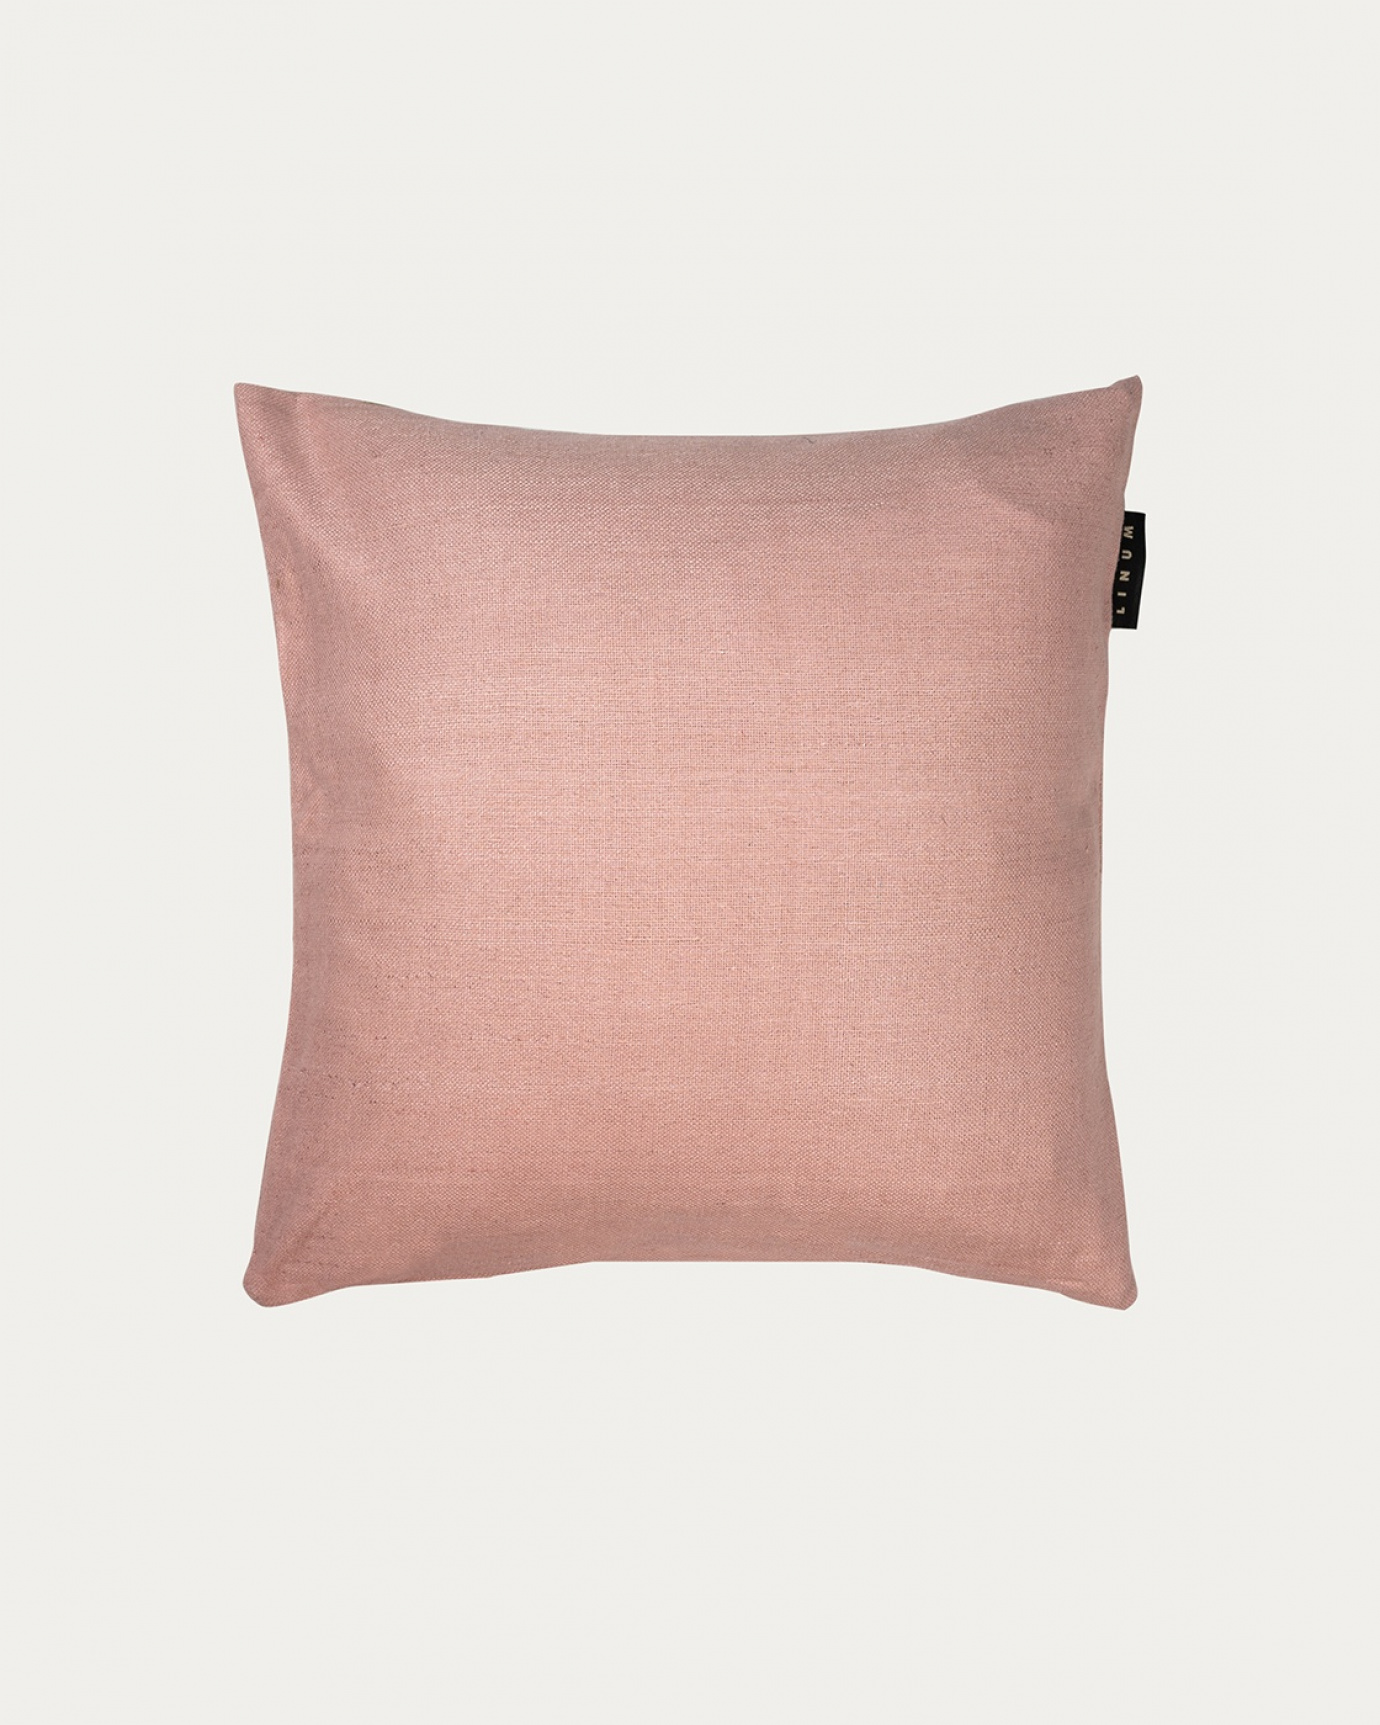 Immagine prodotto rosa antico SETA copricuscini realizzata in 100% seta grezza che dona una bella lucentezza da LINUM DESIGN. Dimensioni 40x40 cm.